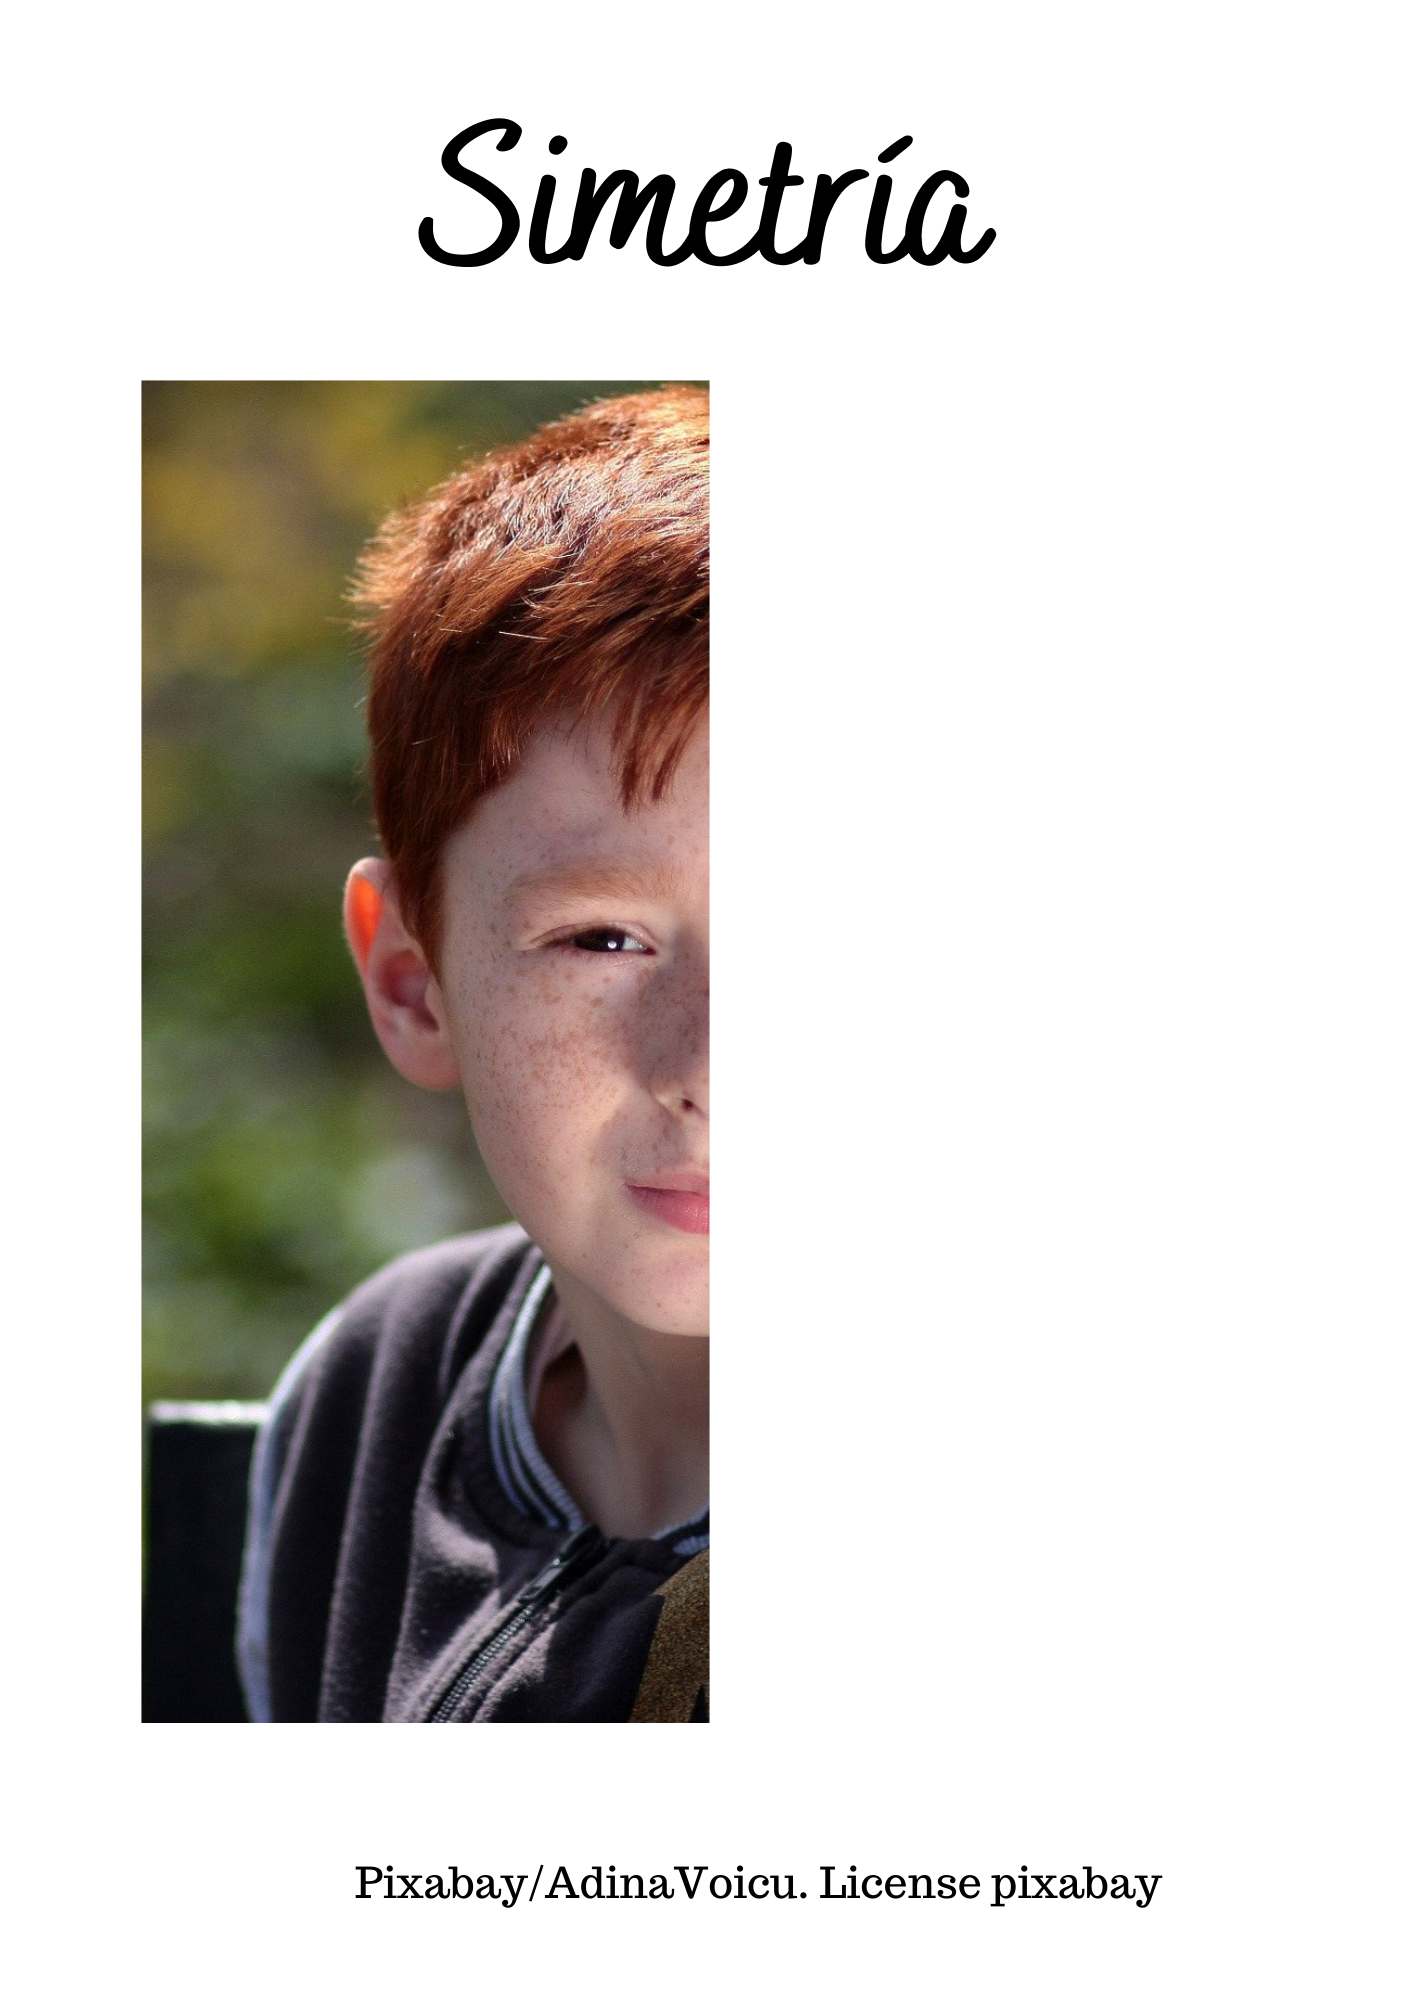 Imagen de la foto de un niño sólo con la parte izquierda de la cara, tendrán que dibujar la parte derecha.